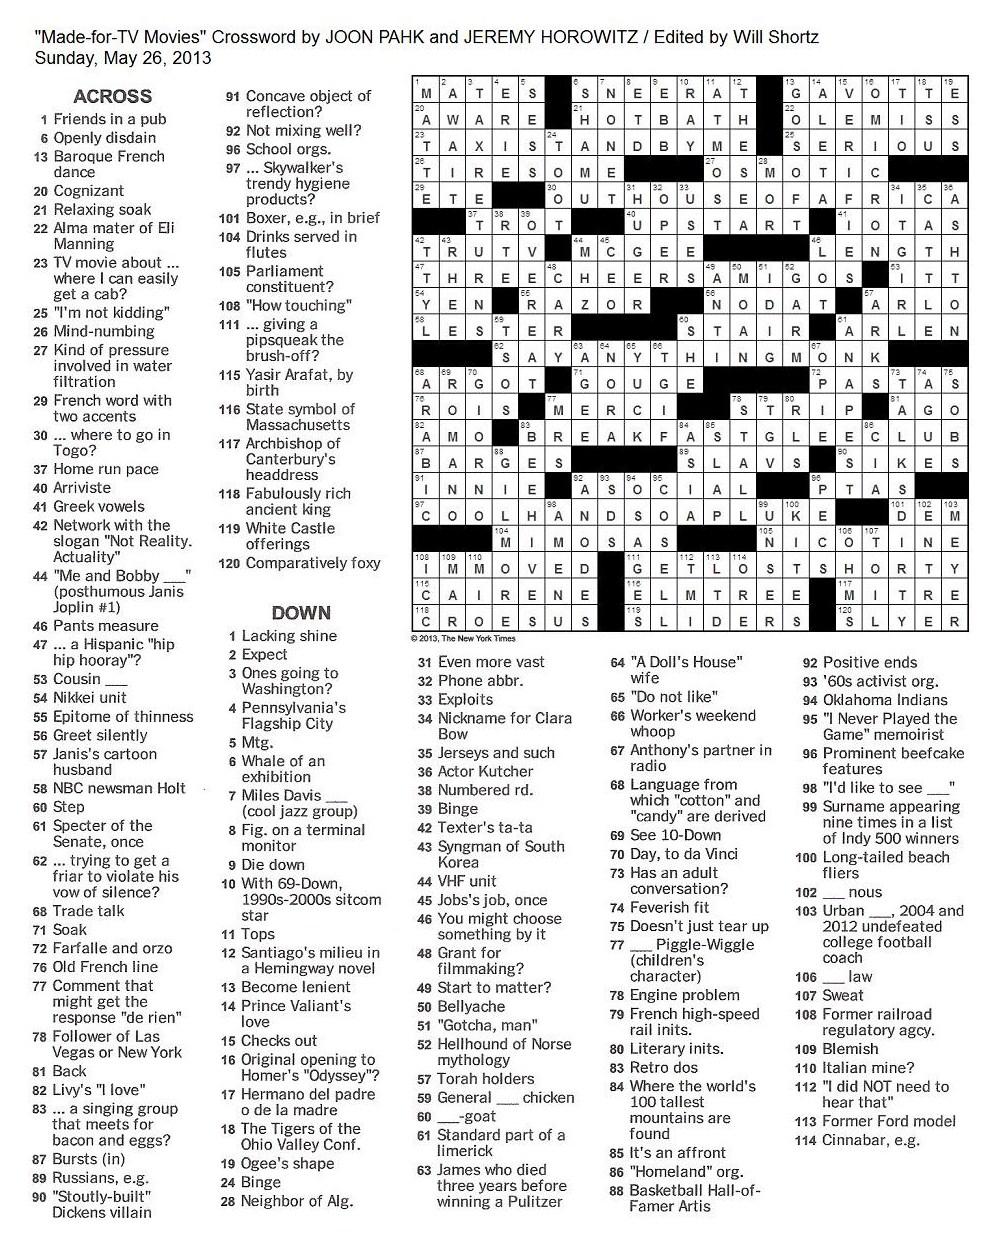 guinness-of-film-nyt-crossword